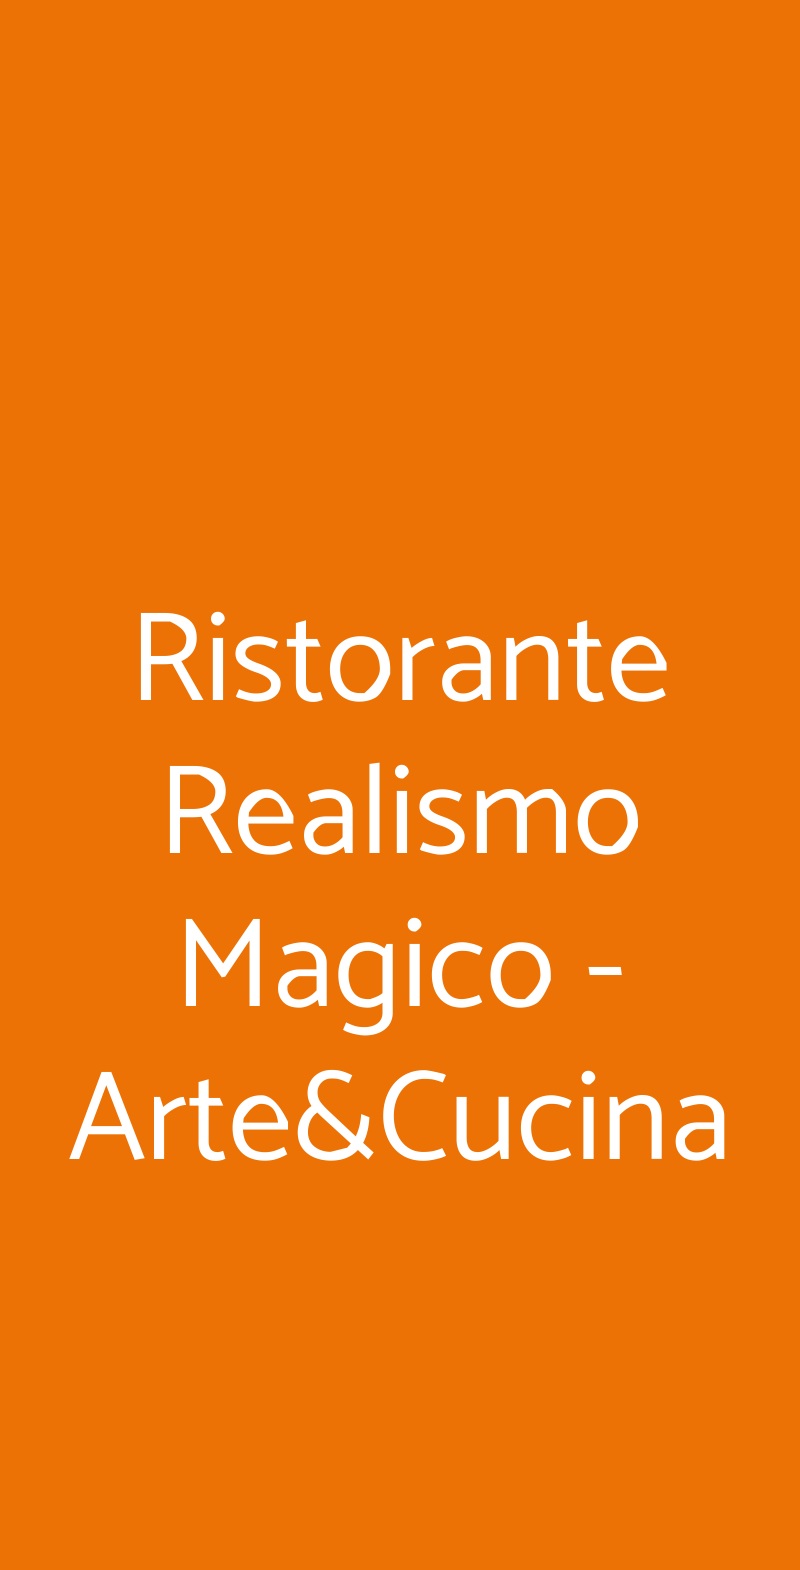 Ristorante Realismo Magico - Arte&Cucina Roma menù 1 pagina